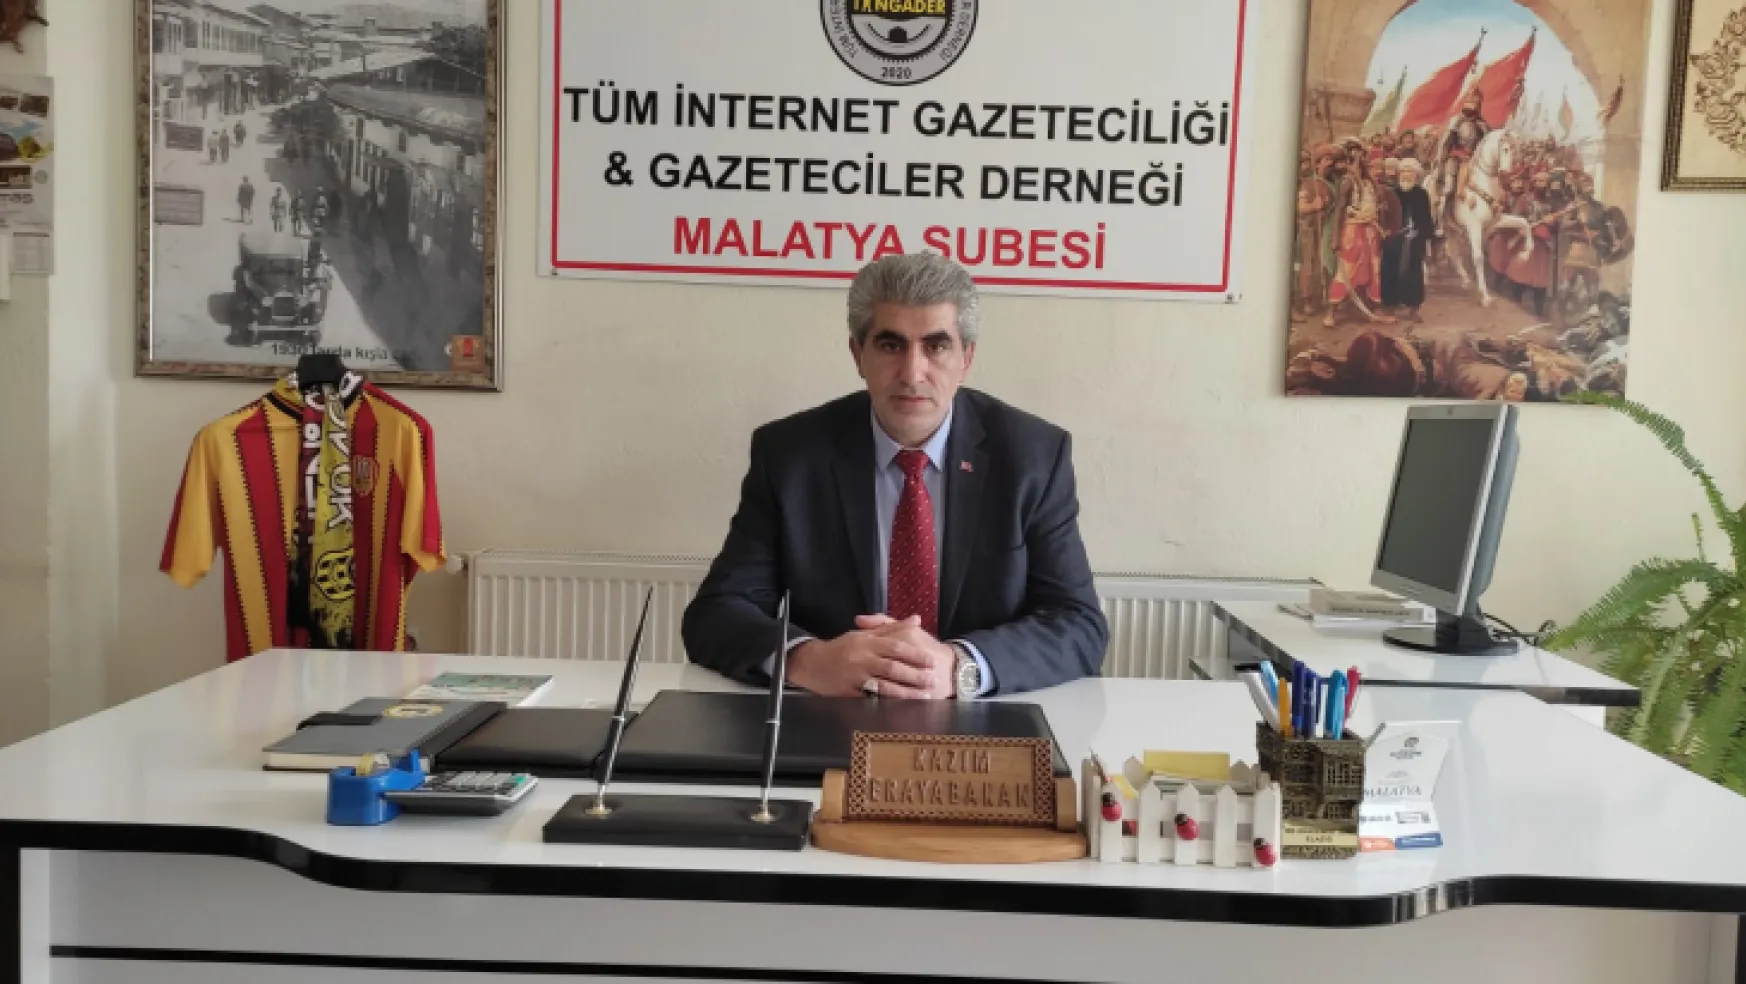 Erayabakan Tingader Doğu Anadolu Bölge Başkanlığına Atandı.